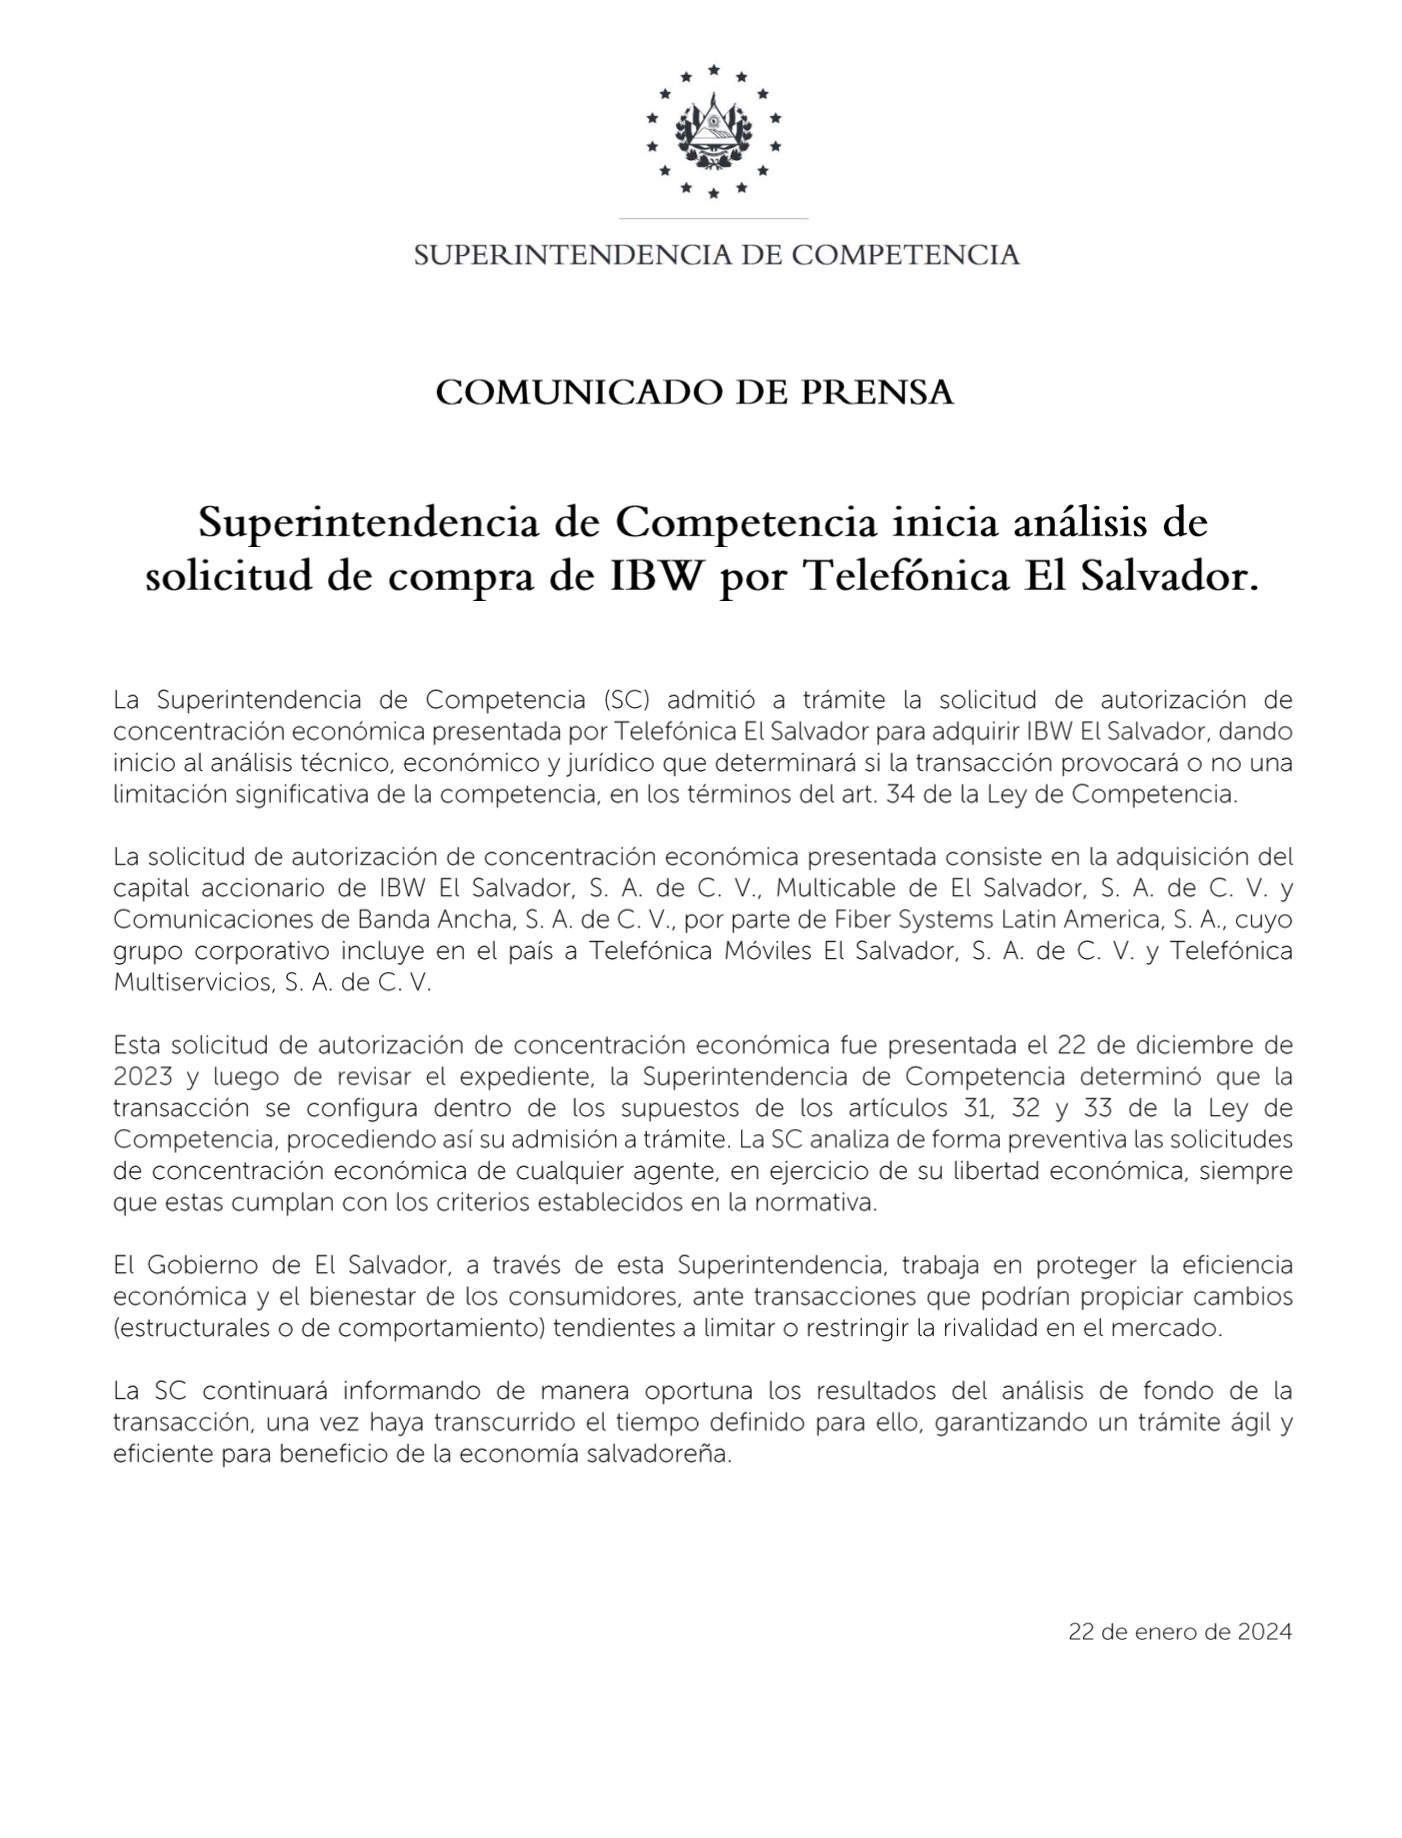 Comunicado. Superintendencia de Competencia inicia análisis de solicitud de compra de IBW por Telefónica El Salvador..pdf